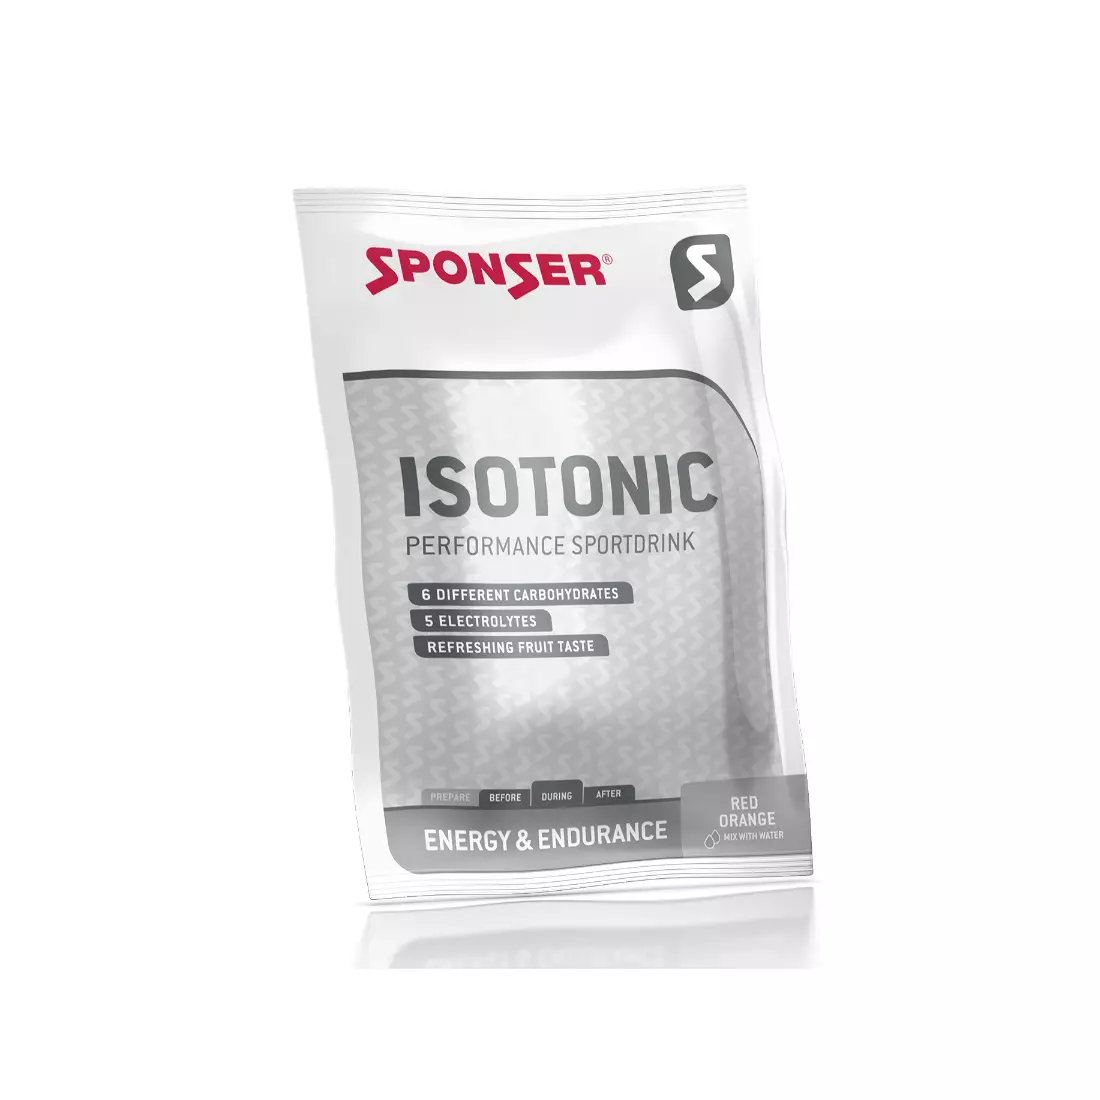 Napój SPONSER ISOTONIC owoce cytrusowe opakowanie 780g 